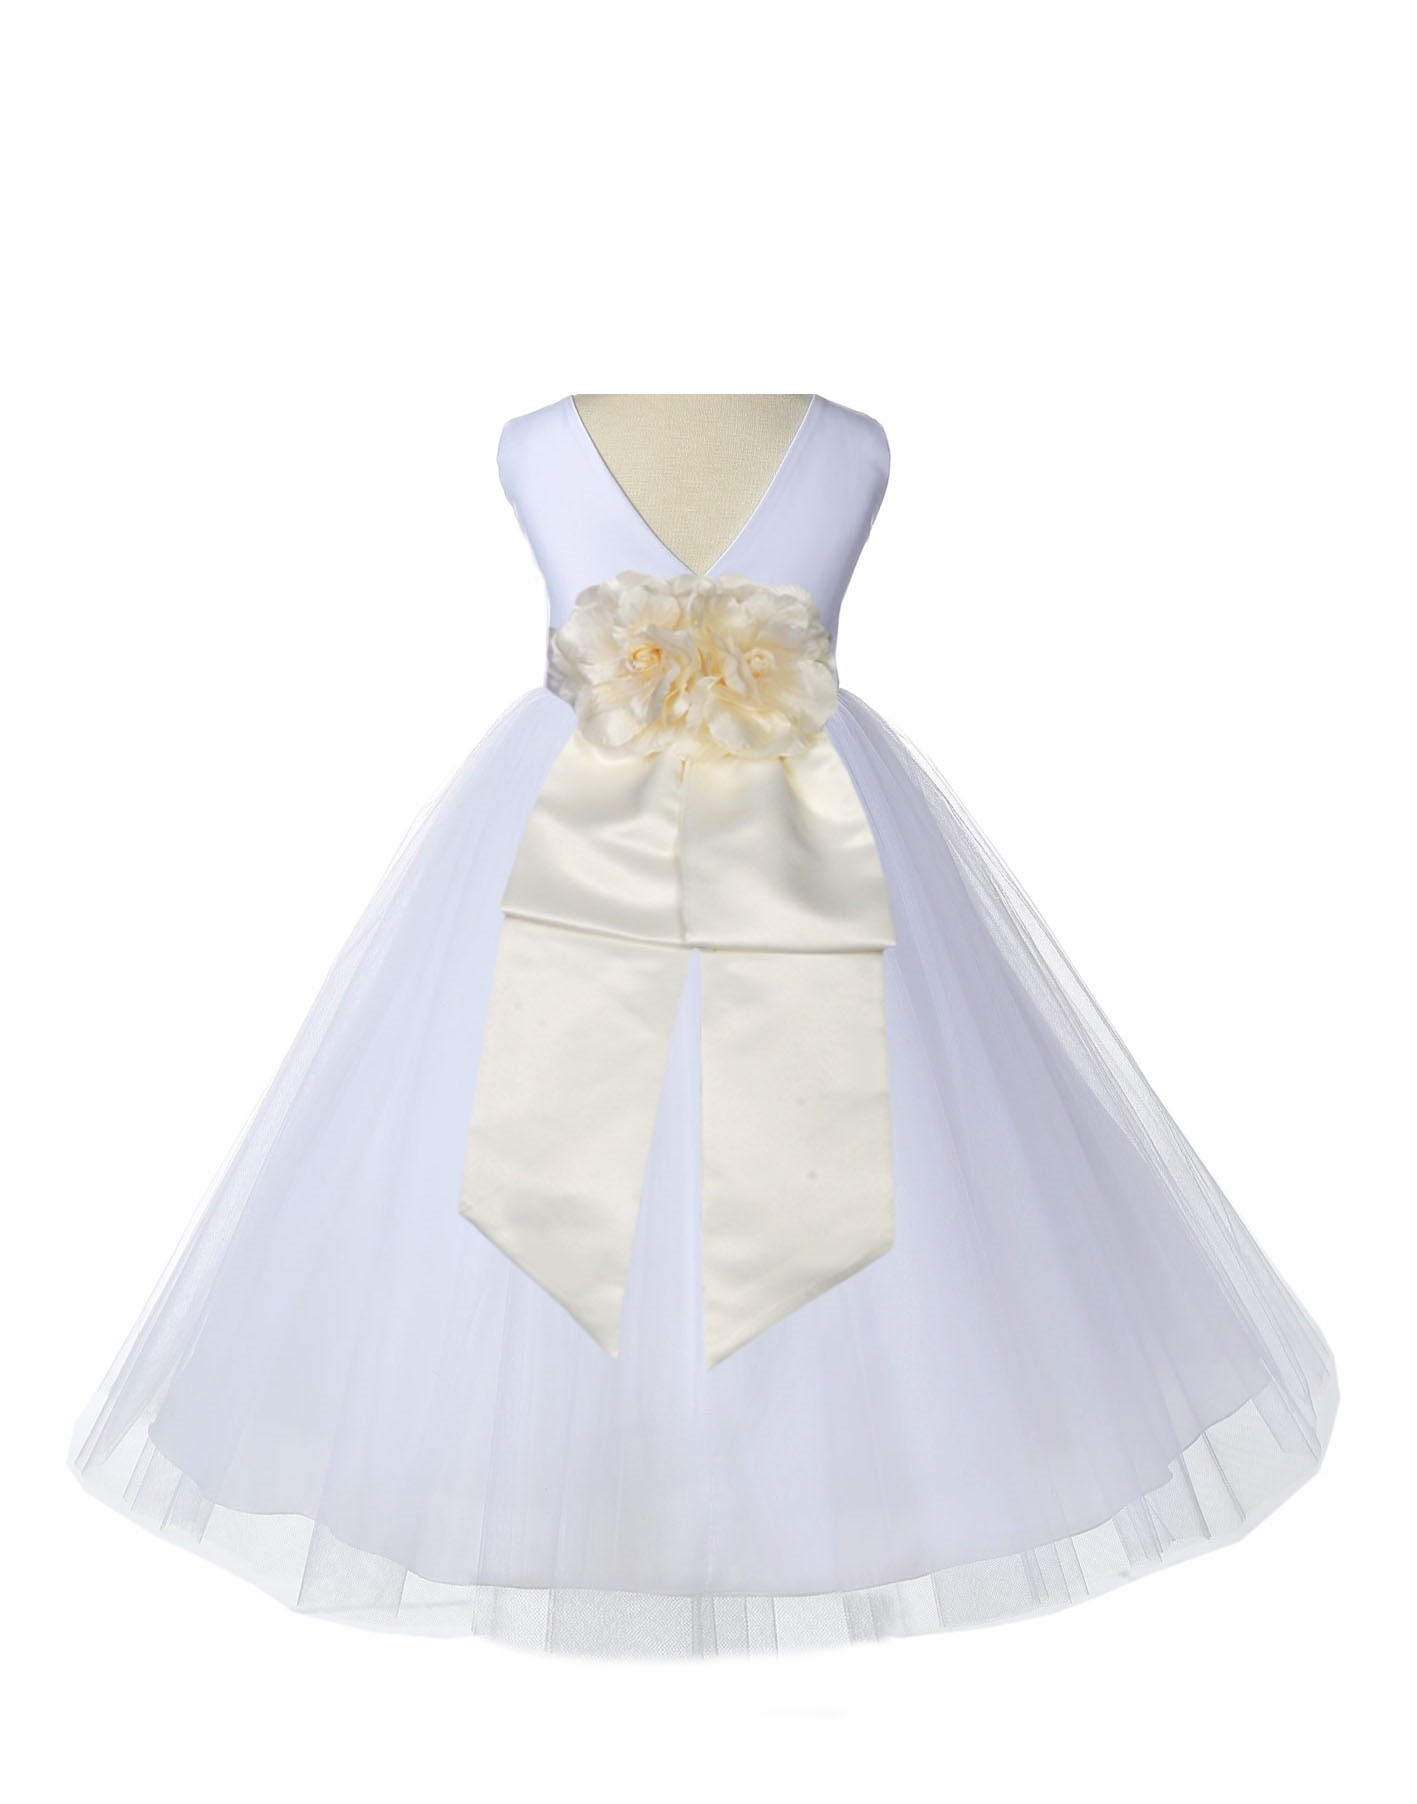 V-Neck Tulle White/Ivory Flower Girl Dress Wedding Pageant 108